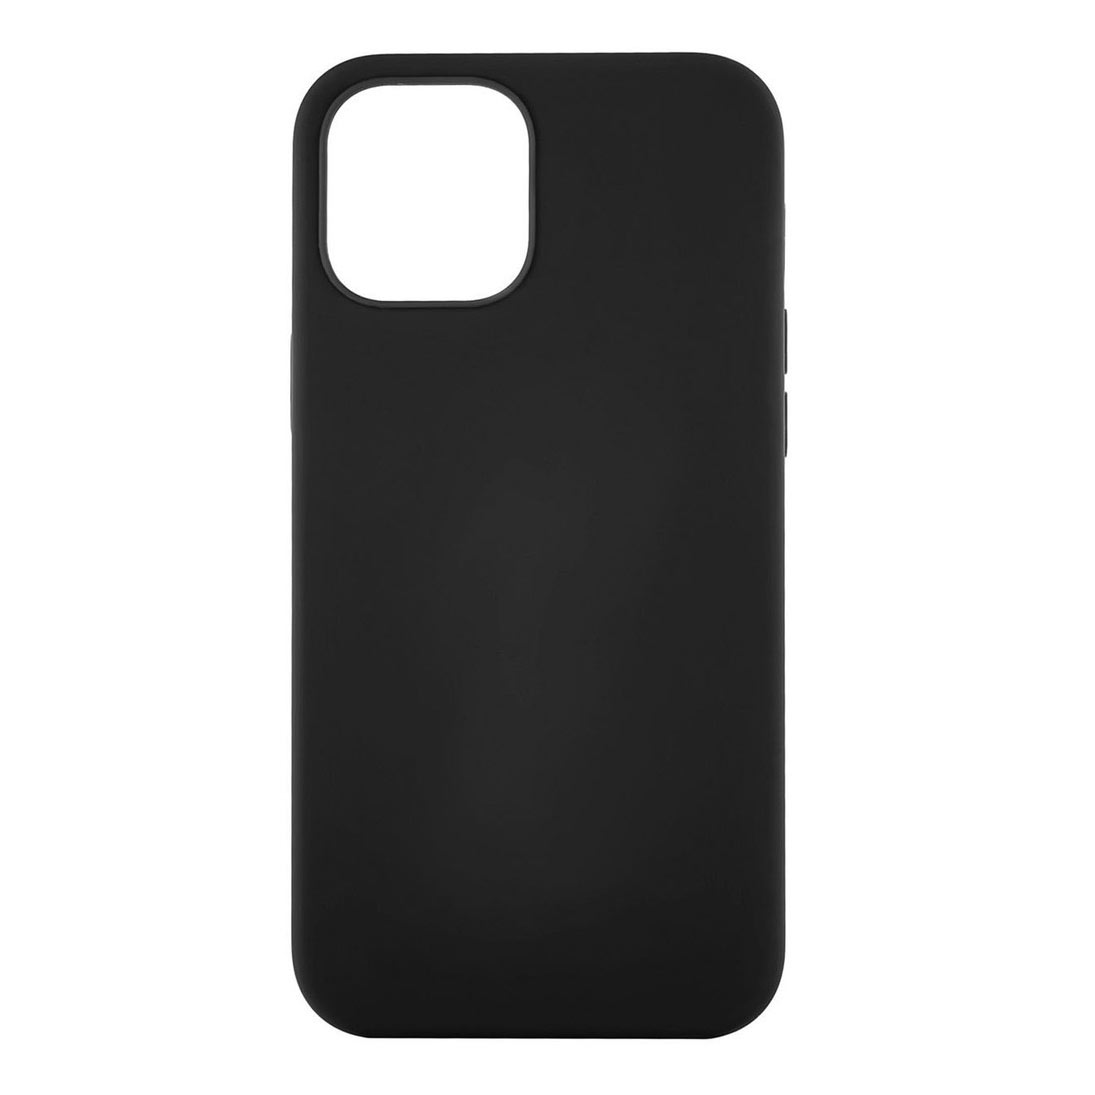 Чехол uBear Touch Case для смартфона Apple iPhone 12 mini, черный